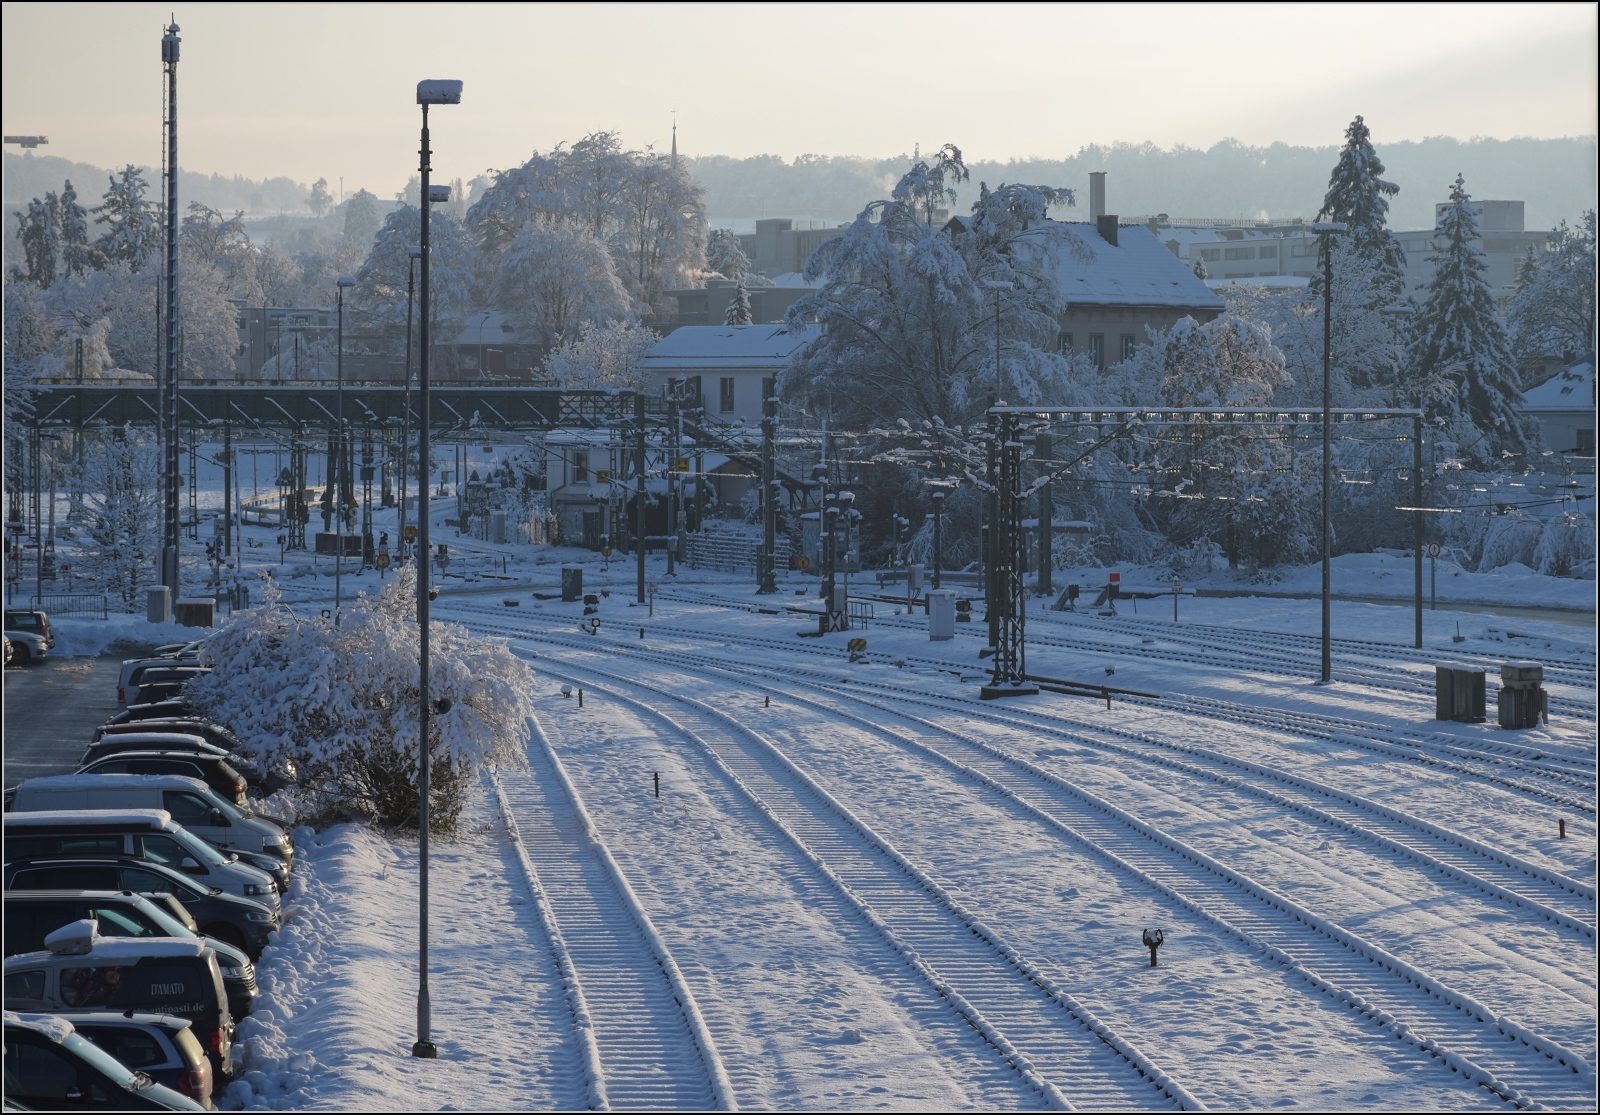 Winterzauber am Bodensee mit Nebenwirkungen.

Weisse Winterwunderwelt im Bahnhof Konstanz im Dezember 2023. Eine echte Schneelast ist nicht erkennbar.